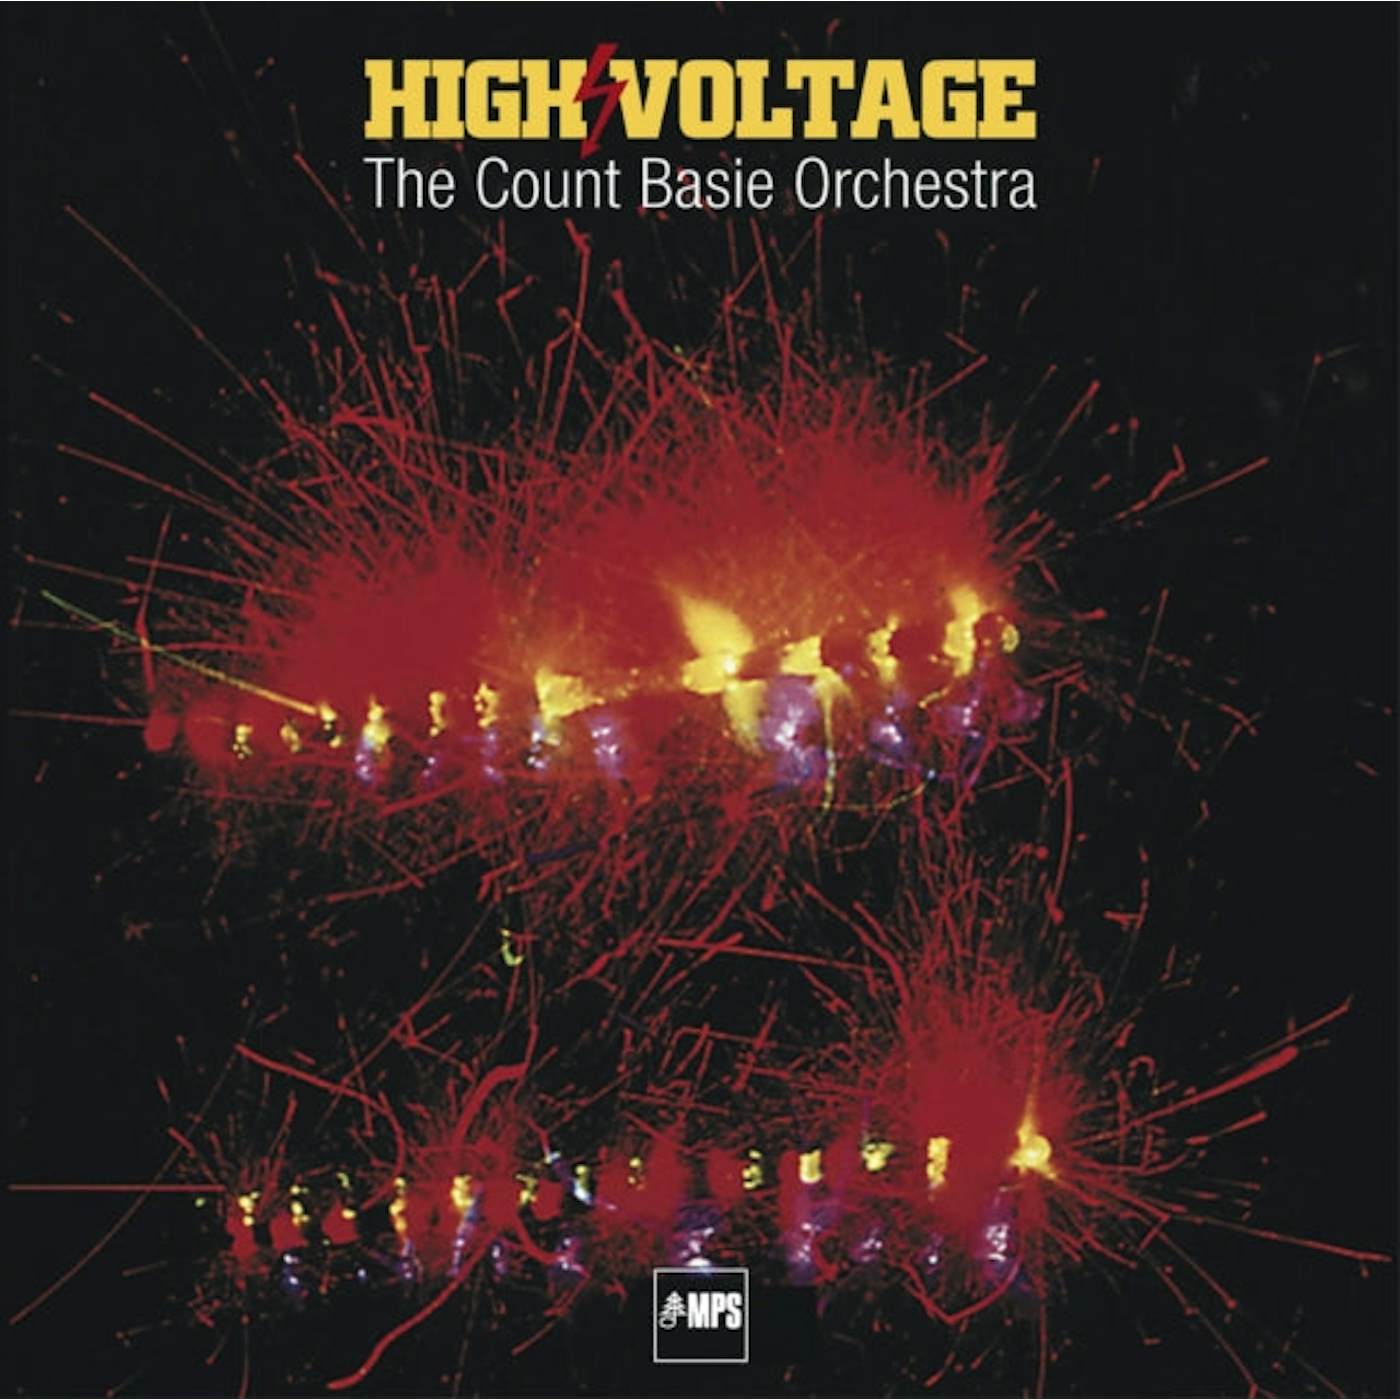  Count Basie Orchestra LP - High Voltage (Vinyl)